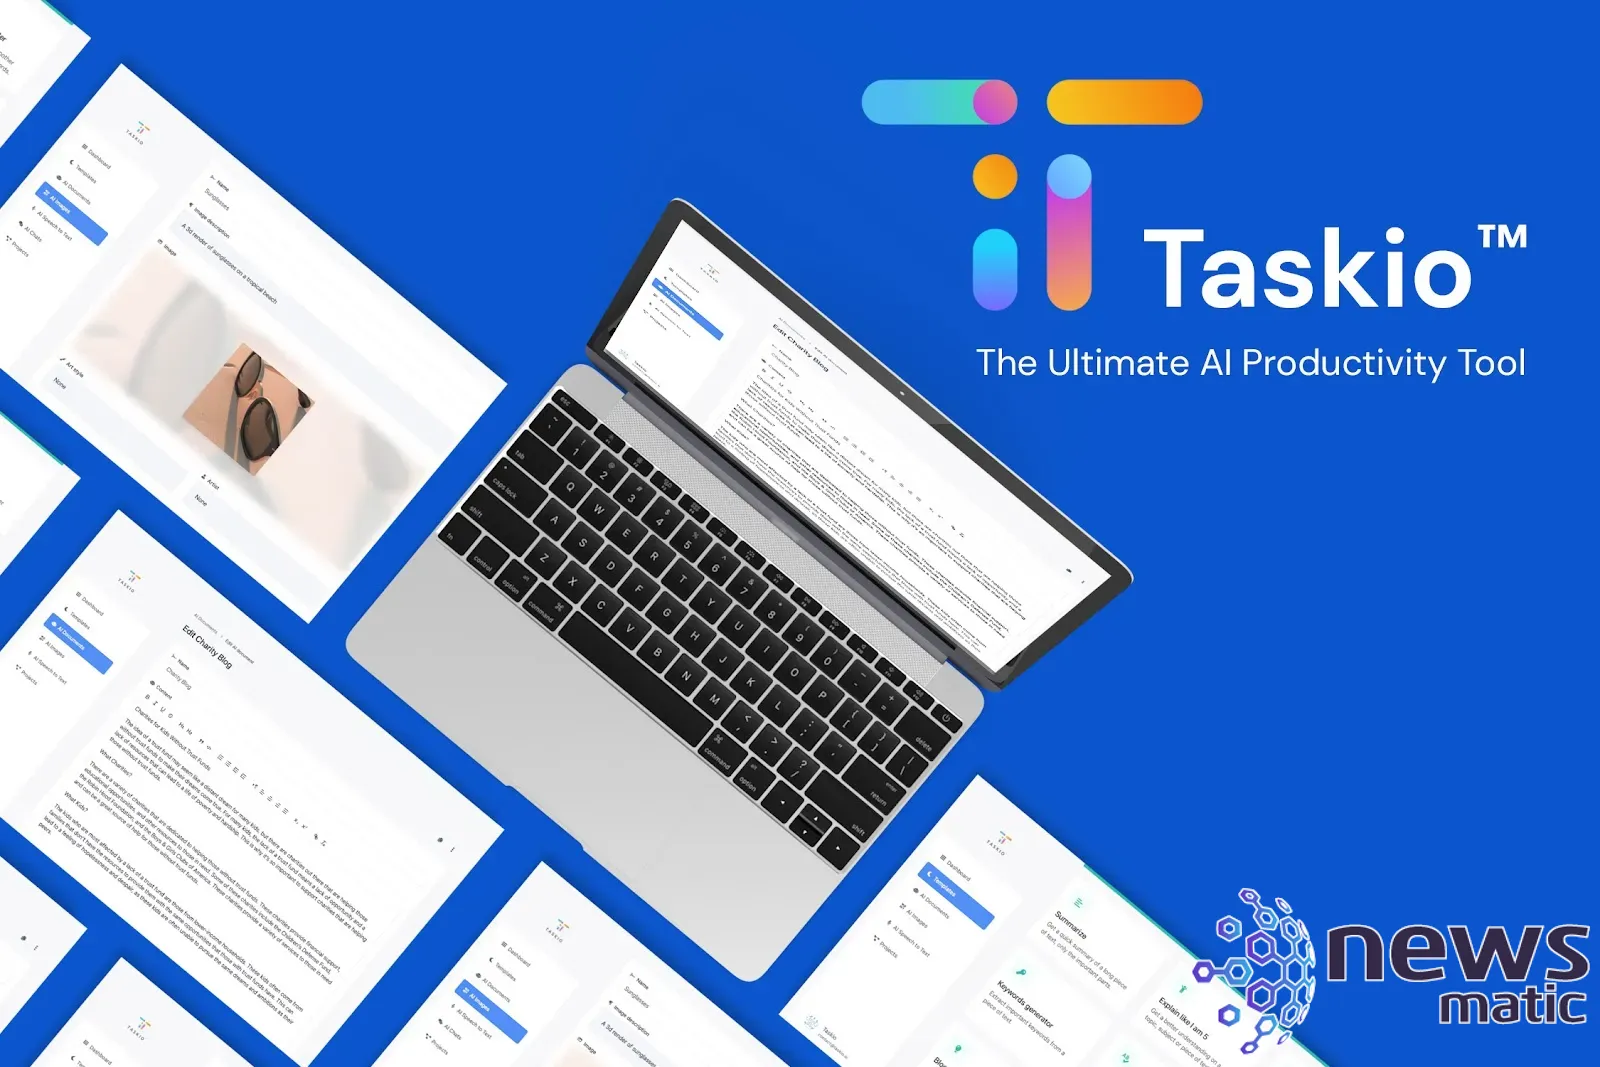 ¡Aumenta la productividad de tu empresa con Taskio - Inteligencia artificial - | Imagen 1 Newsmatic